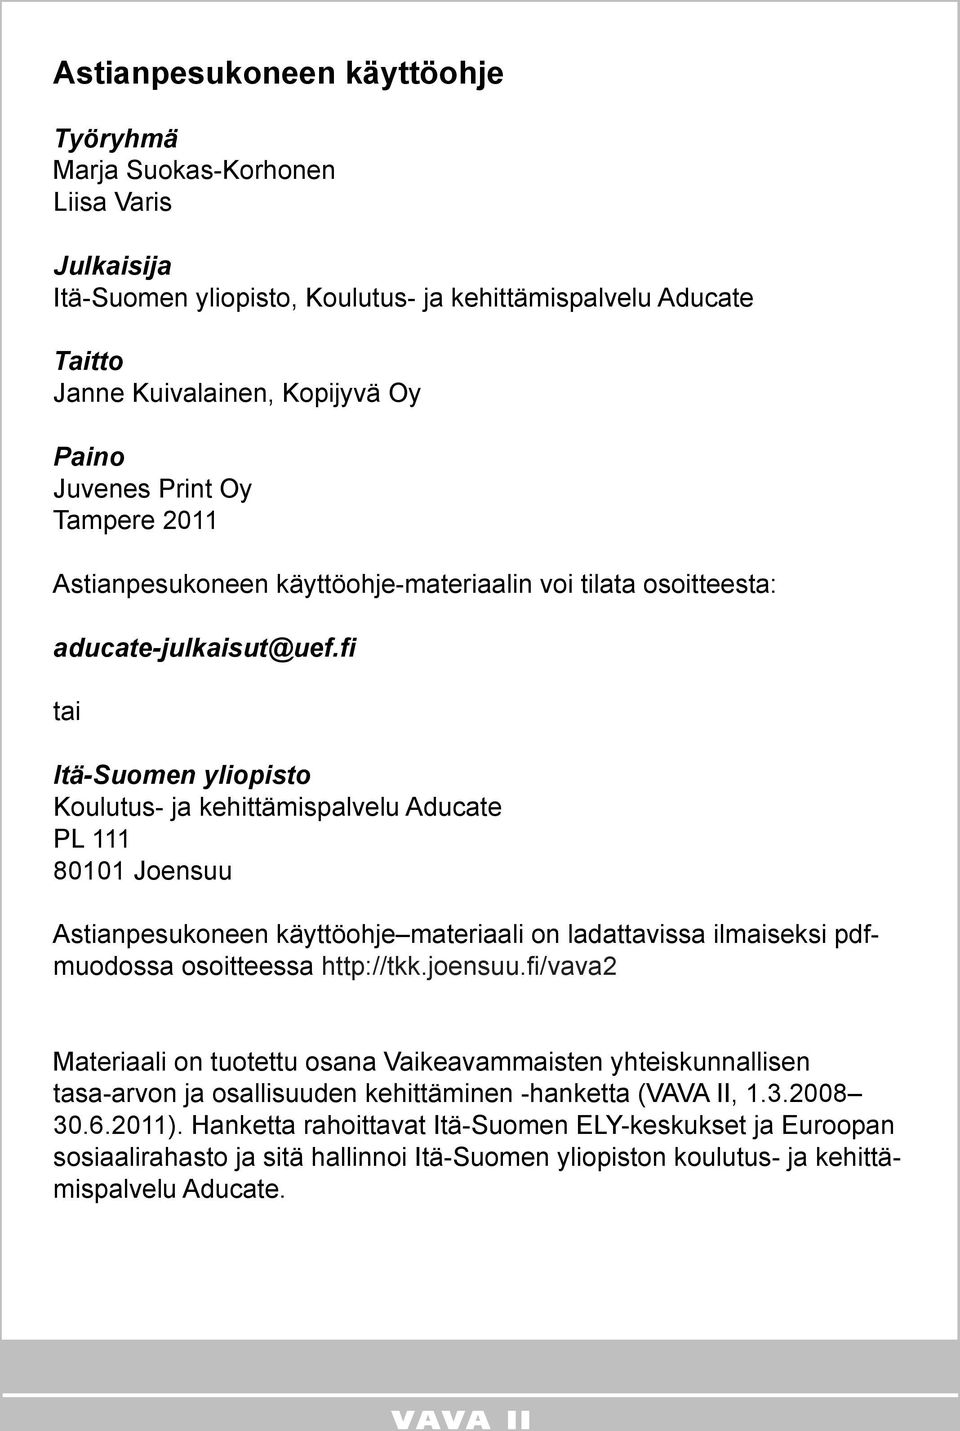 fi tai Itä-Suomen yliopisto Koulutus- ja kehittämispalvelu Aducate PL 111 80101 Joensuu Astianpesukoneen käyttöohje materiaali on ladattavissa ilmaiseksi pdfmuodossa osoitteessa http://tkk.joensuu.